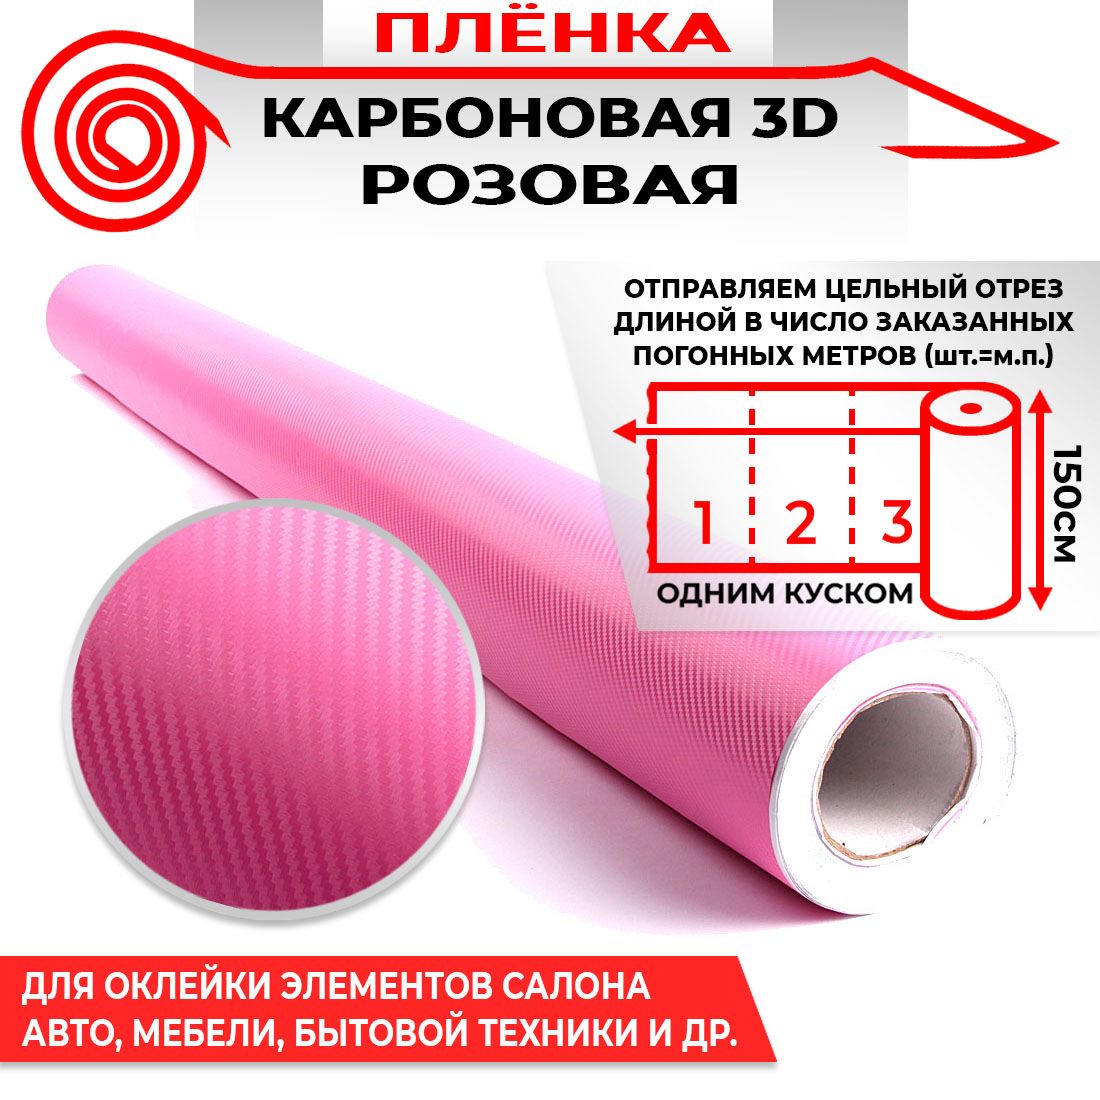 Пленка карбоновая 3D - Розовый 160мкм 1.5м х 0.5п.м